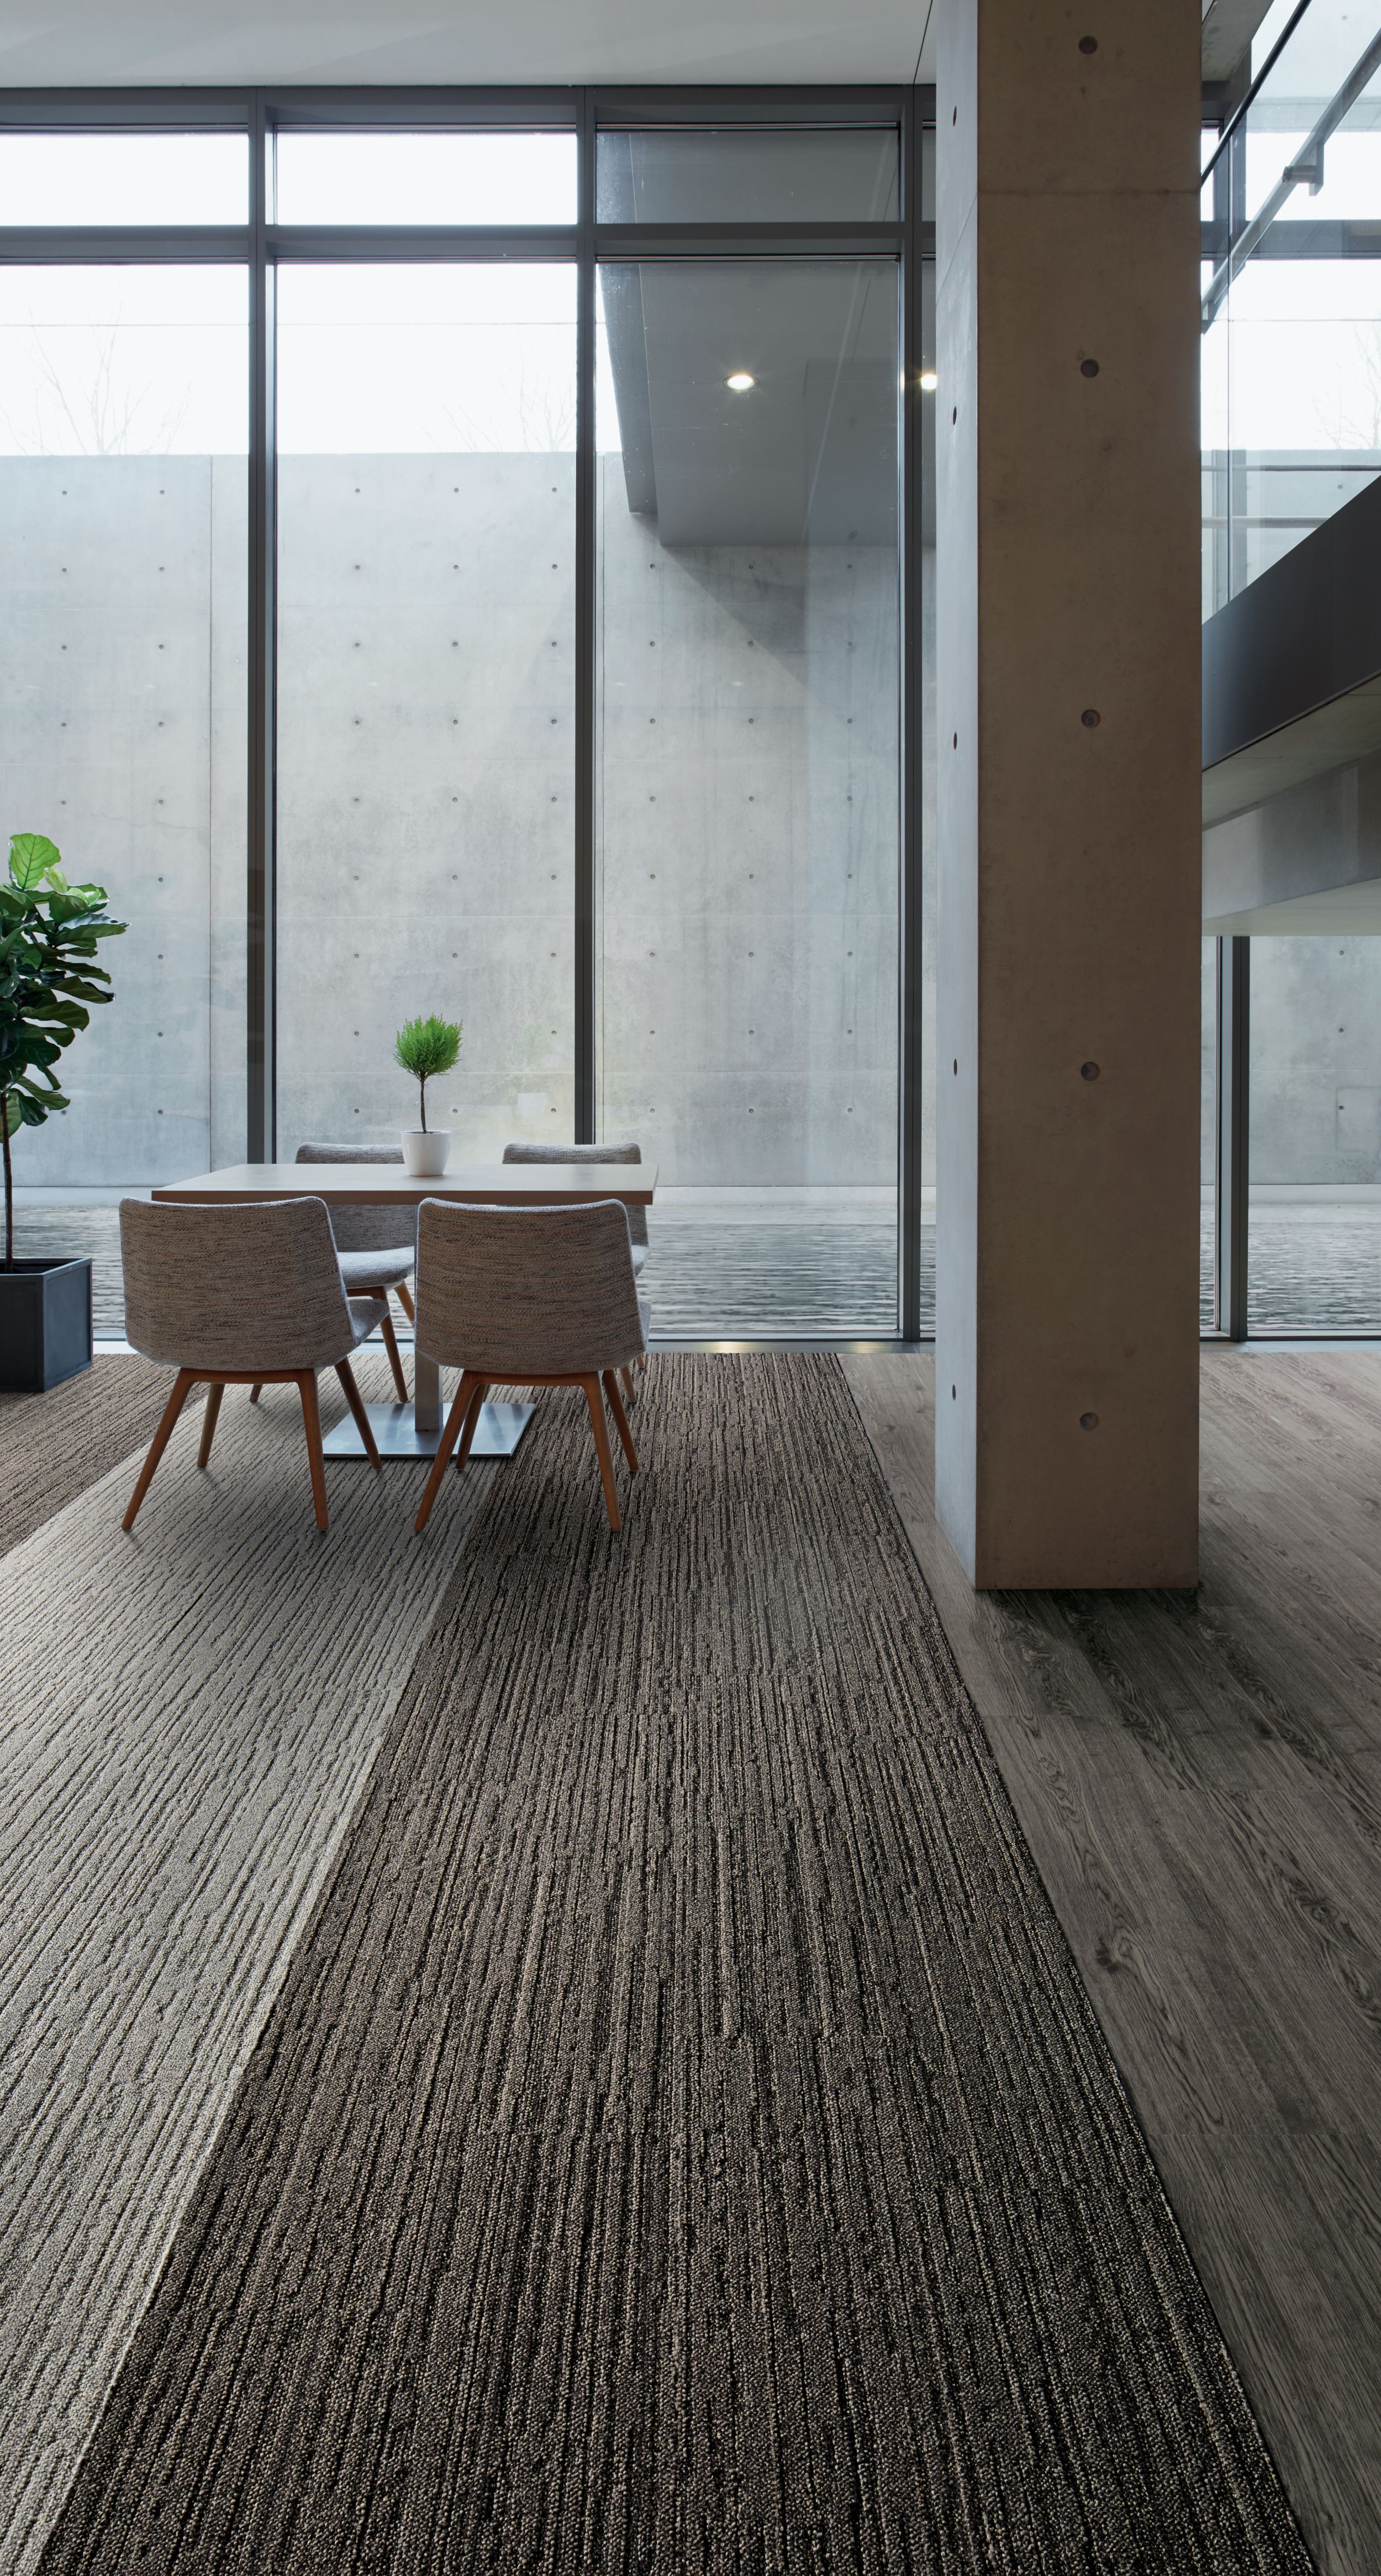 Interface WW880 plank carpet tile and Natural Woodgrains LVT in office common area número de imagen 6